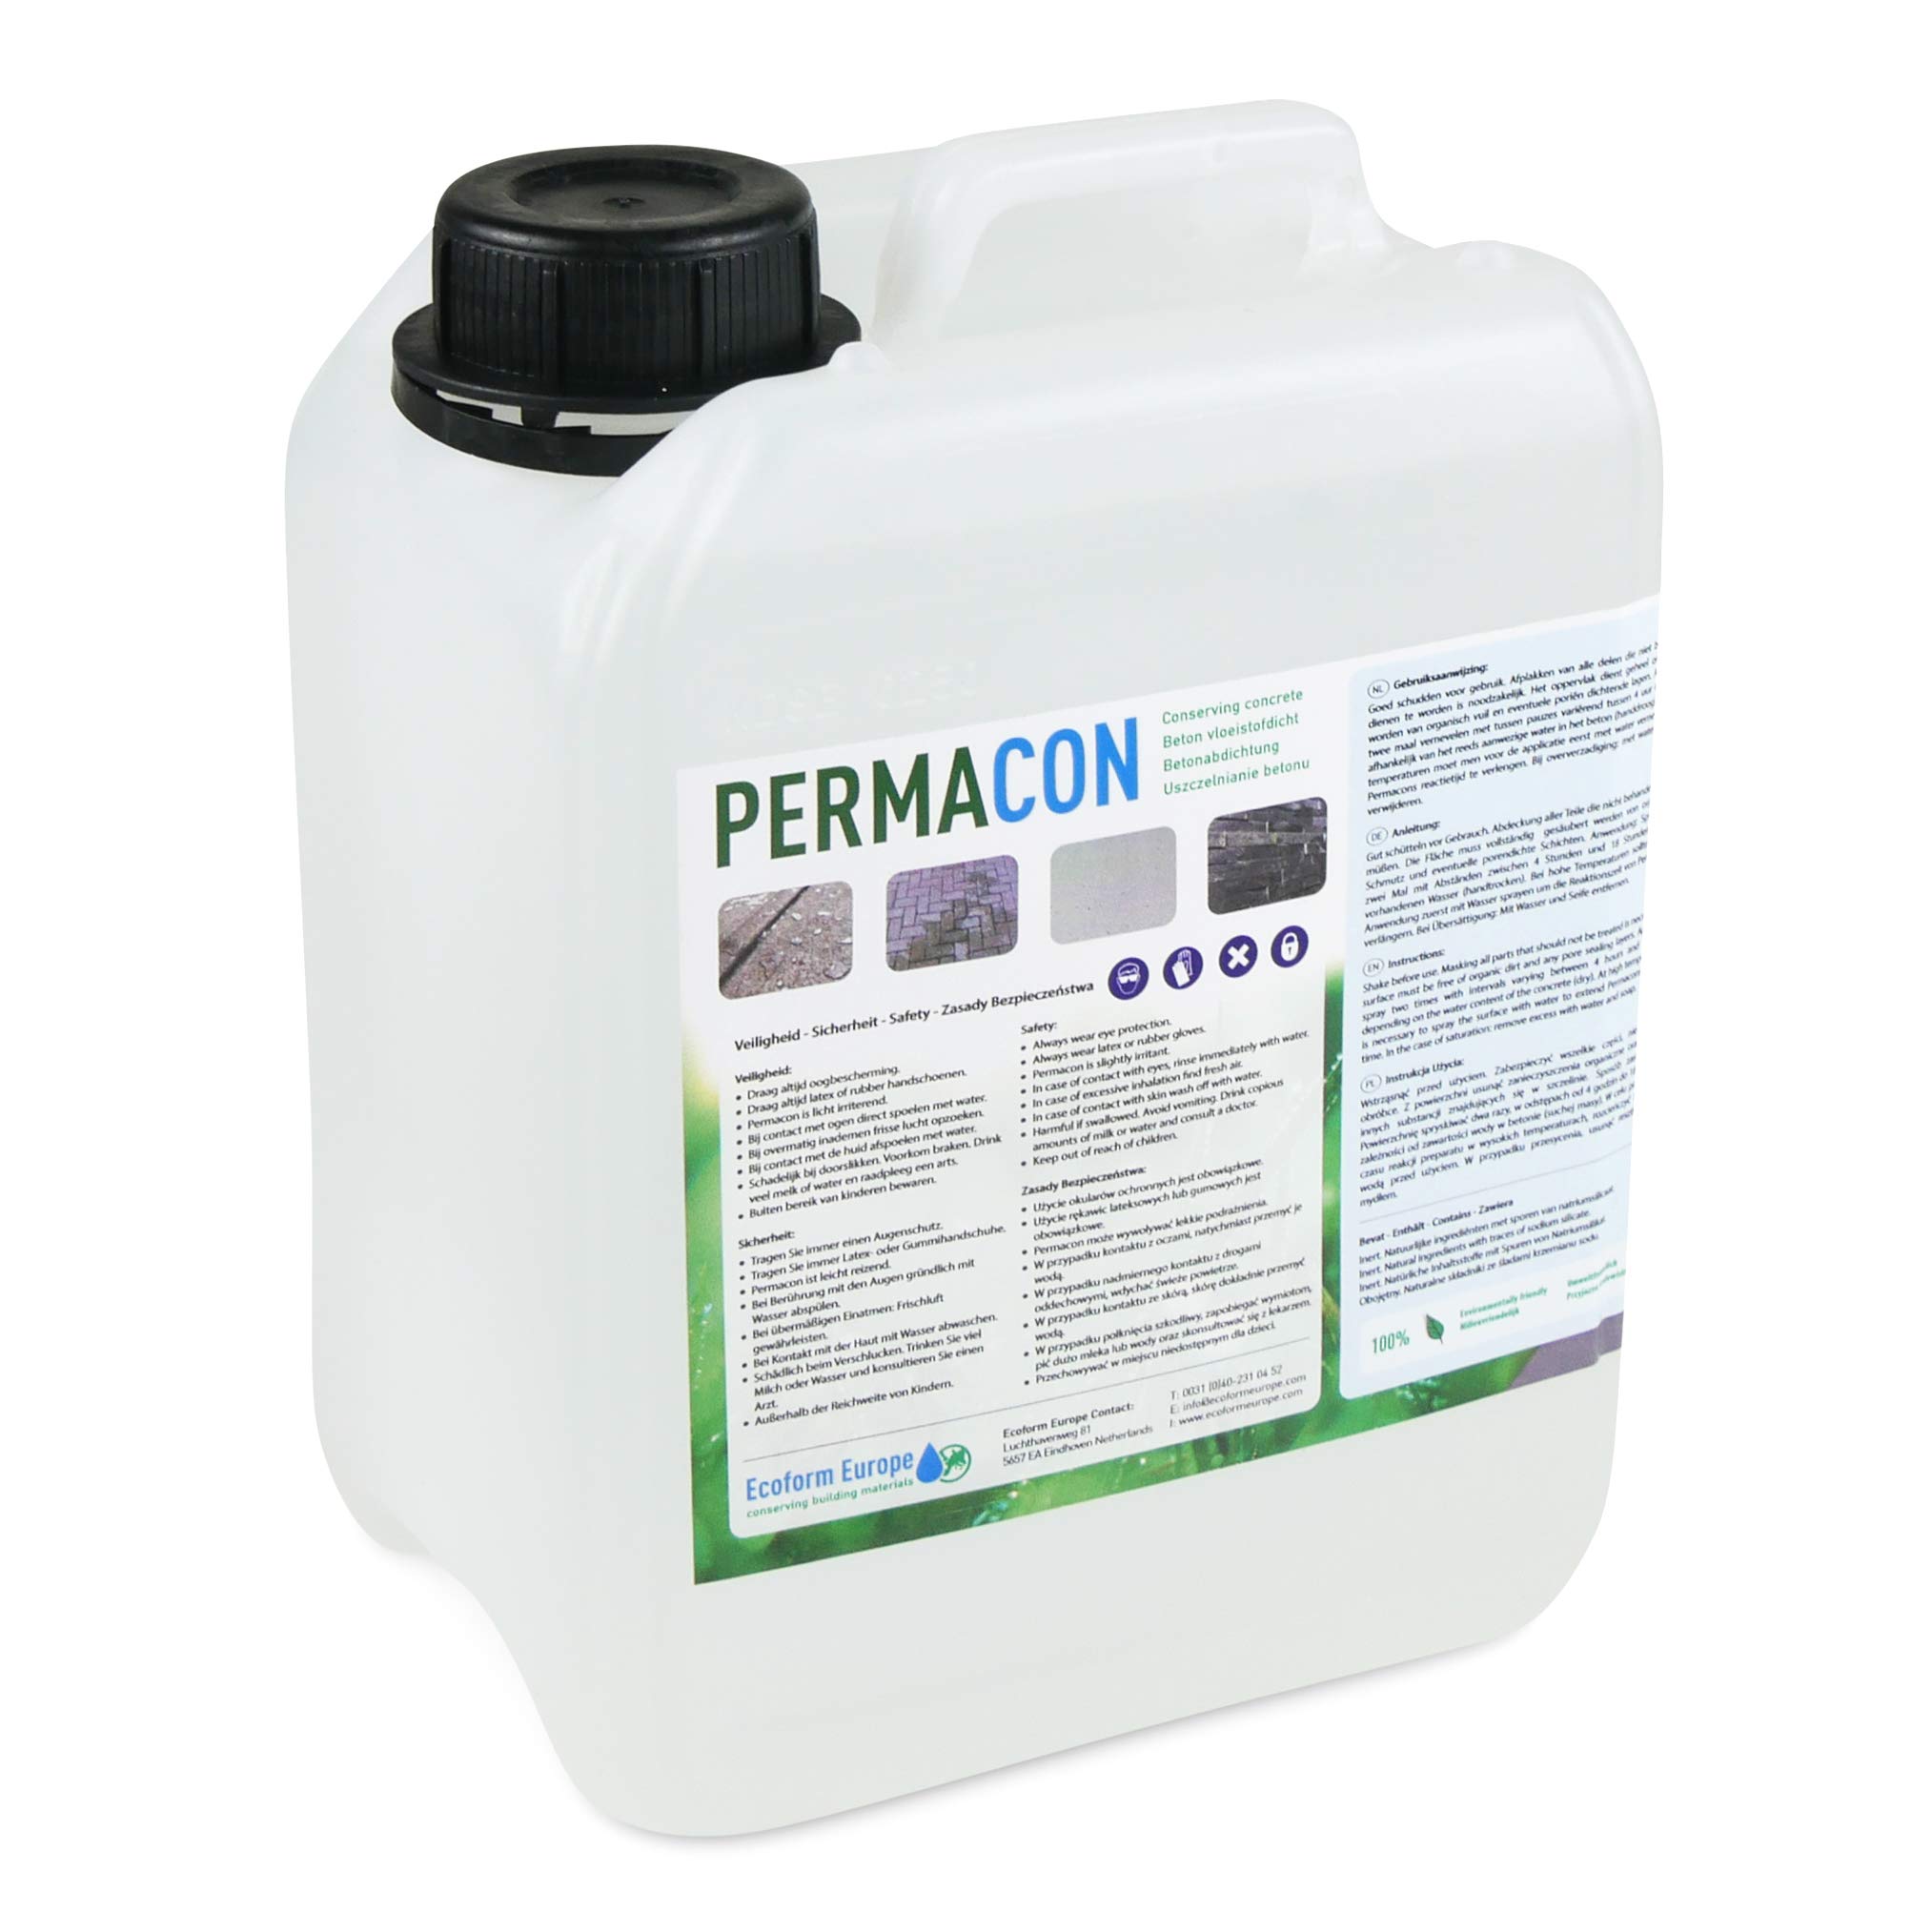 Ecoform Permacon Betonversiegelung 2,5 Liter - Transparente Wasserdichte Beschichtung für Beton & Stein - permanenter Feuchteschutz Innen & Außen